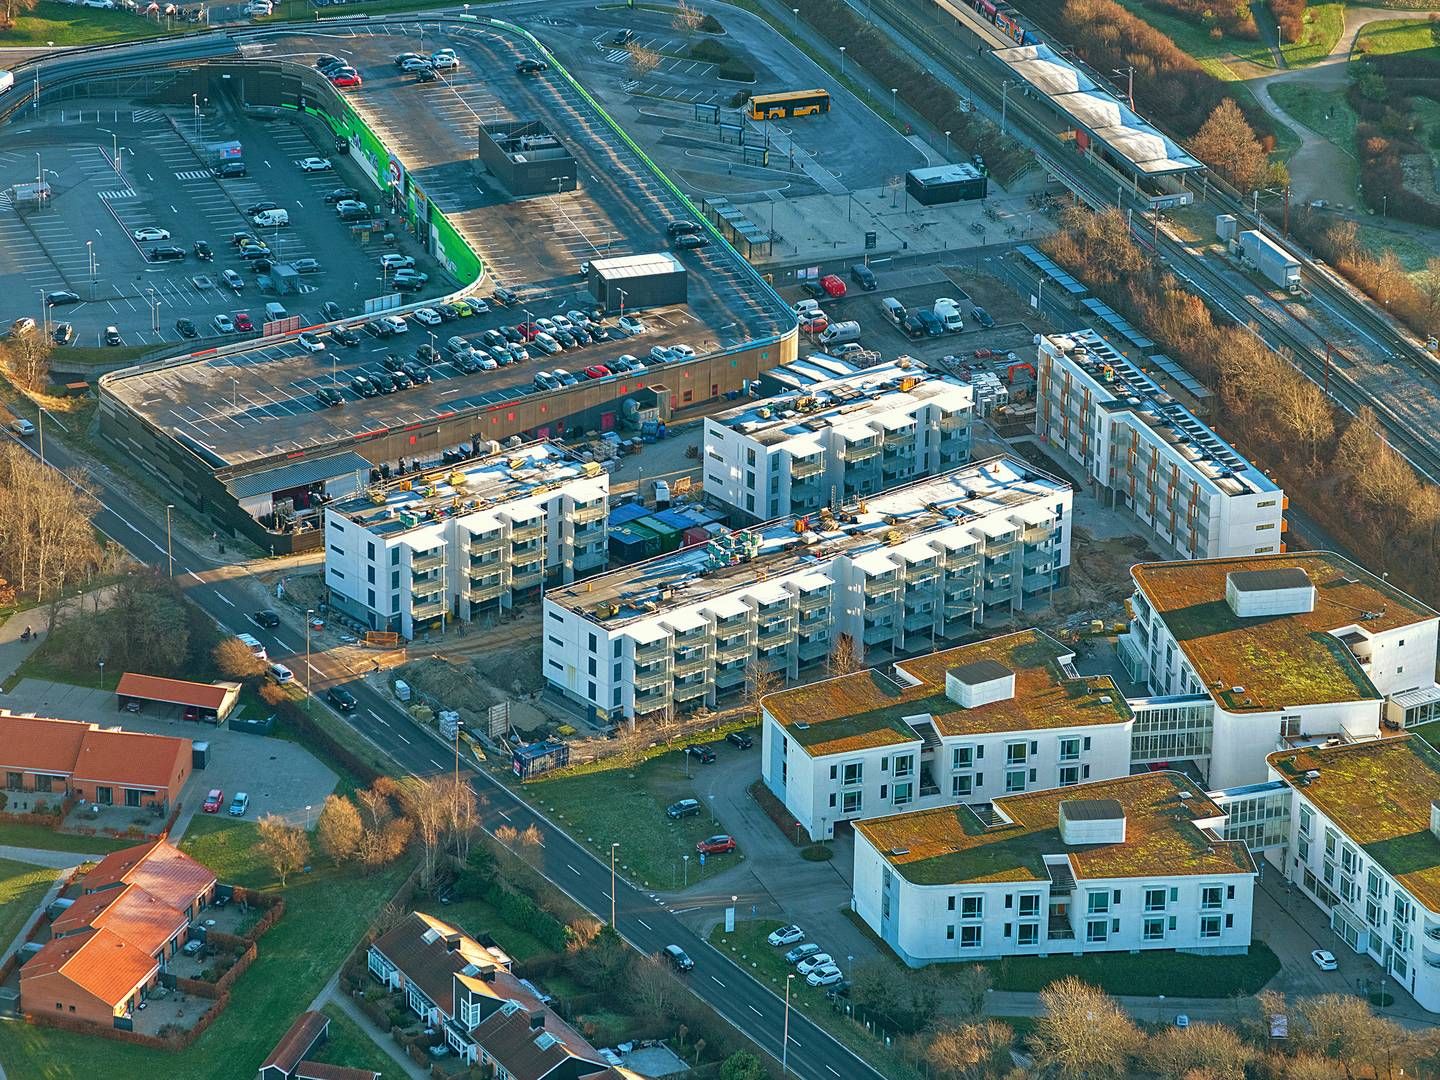 De fire bygninger bagerst i billedet er det omtalte Strandhaven-projekt i Karlslunde. Køber var særligt begejstret for de mange, store altaner, lyder det fra mægler. | Foto: PR / Cushman Wakefield Red